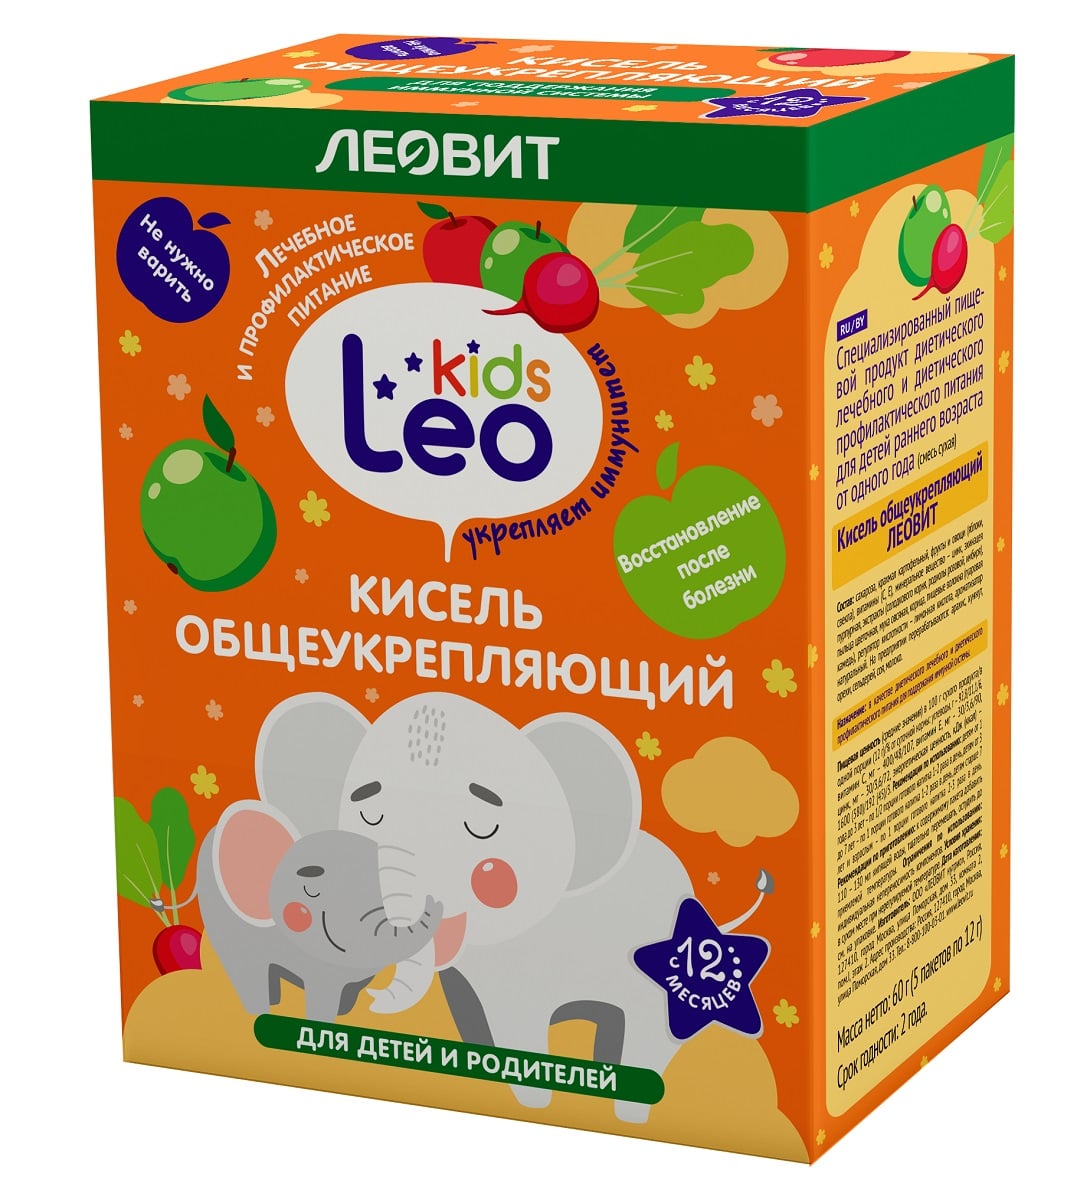 Купить Леовит Кисель общеукрепляющий для детей, 5 пакетов х 12 г (Леовит, Leo Kids), Россия